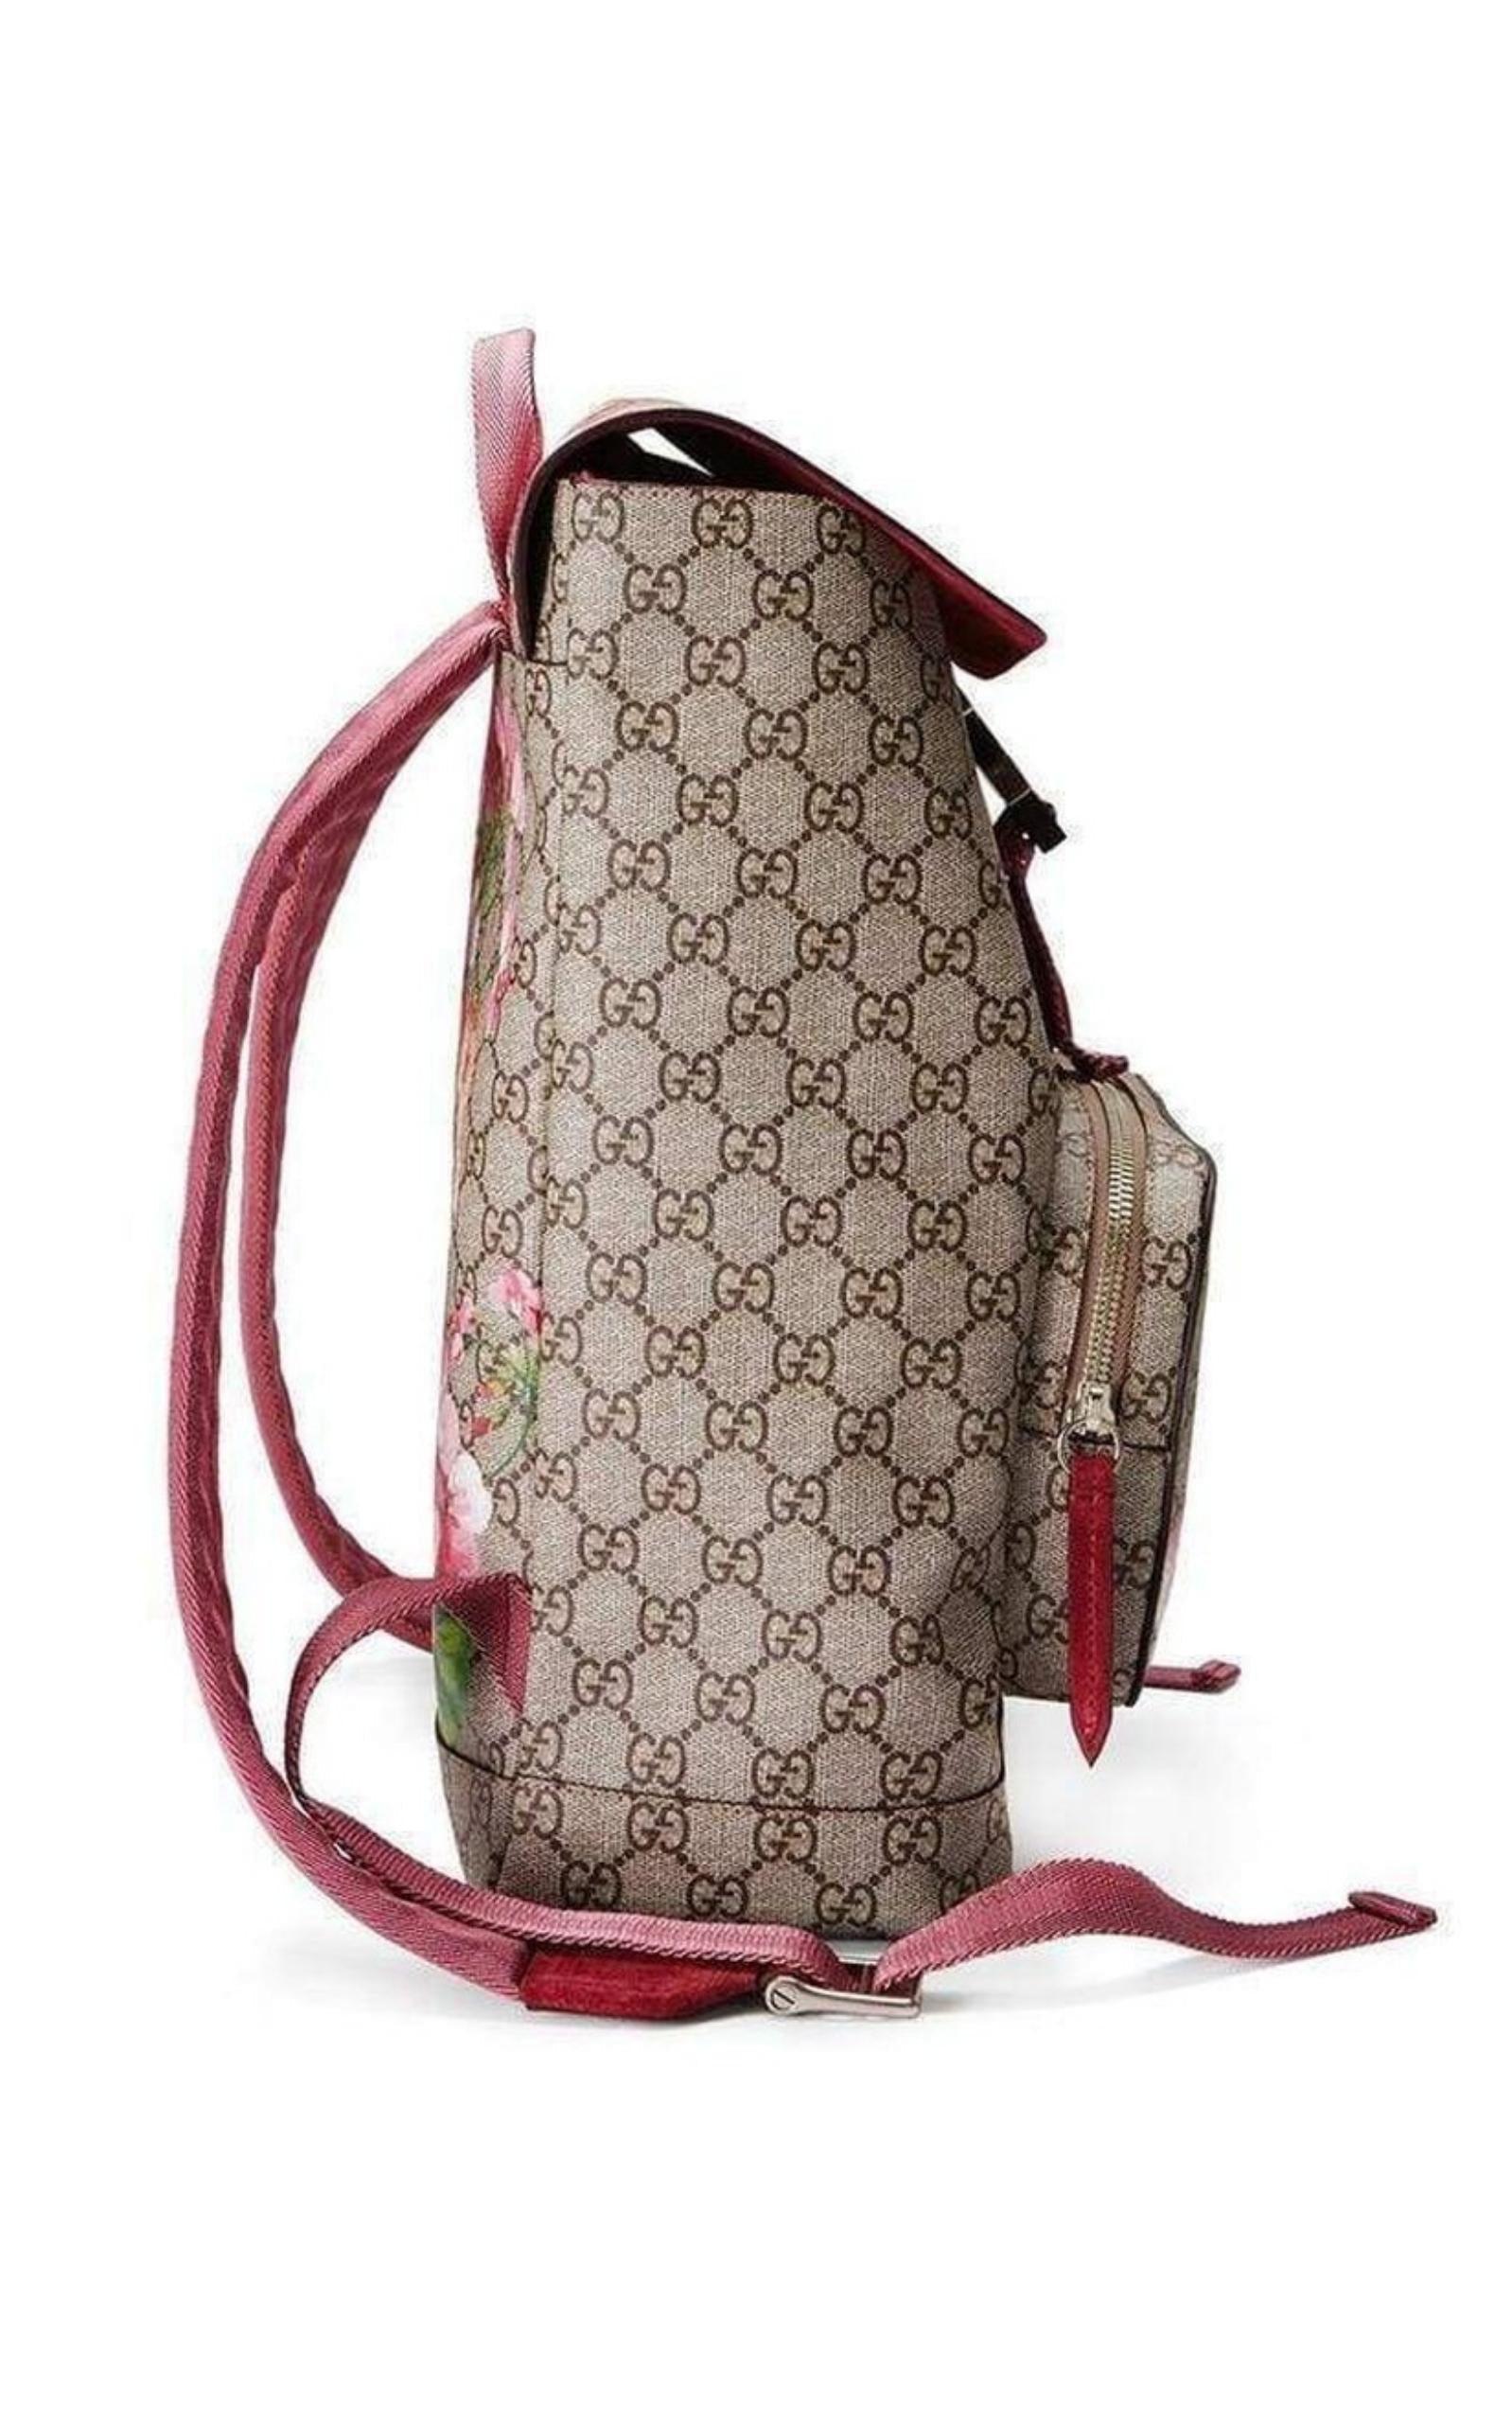 Gucci GG One-shoulder Backpack in Natural for Men